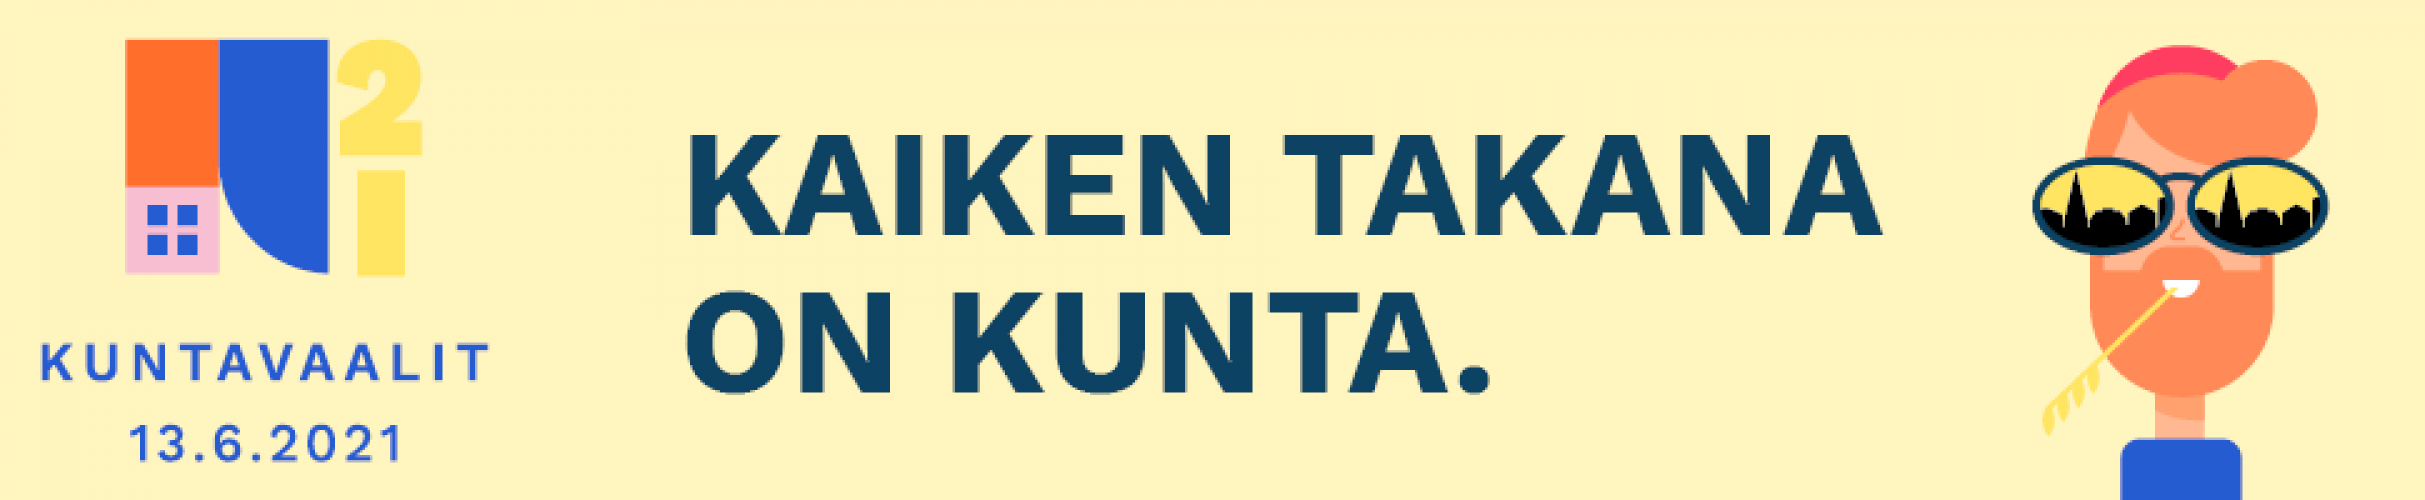 Kuntavaalien logo, suomenkielisella tekstillä.